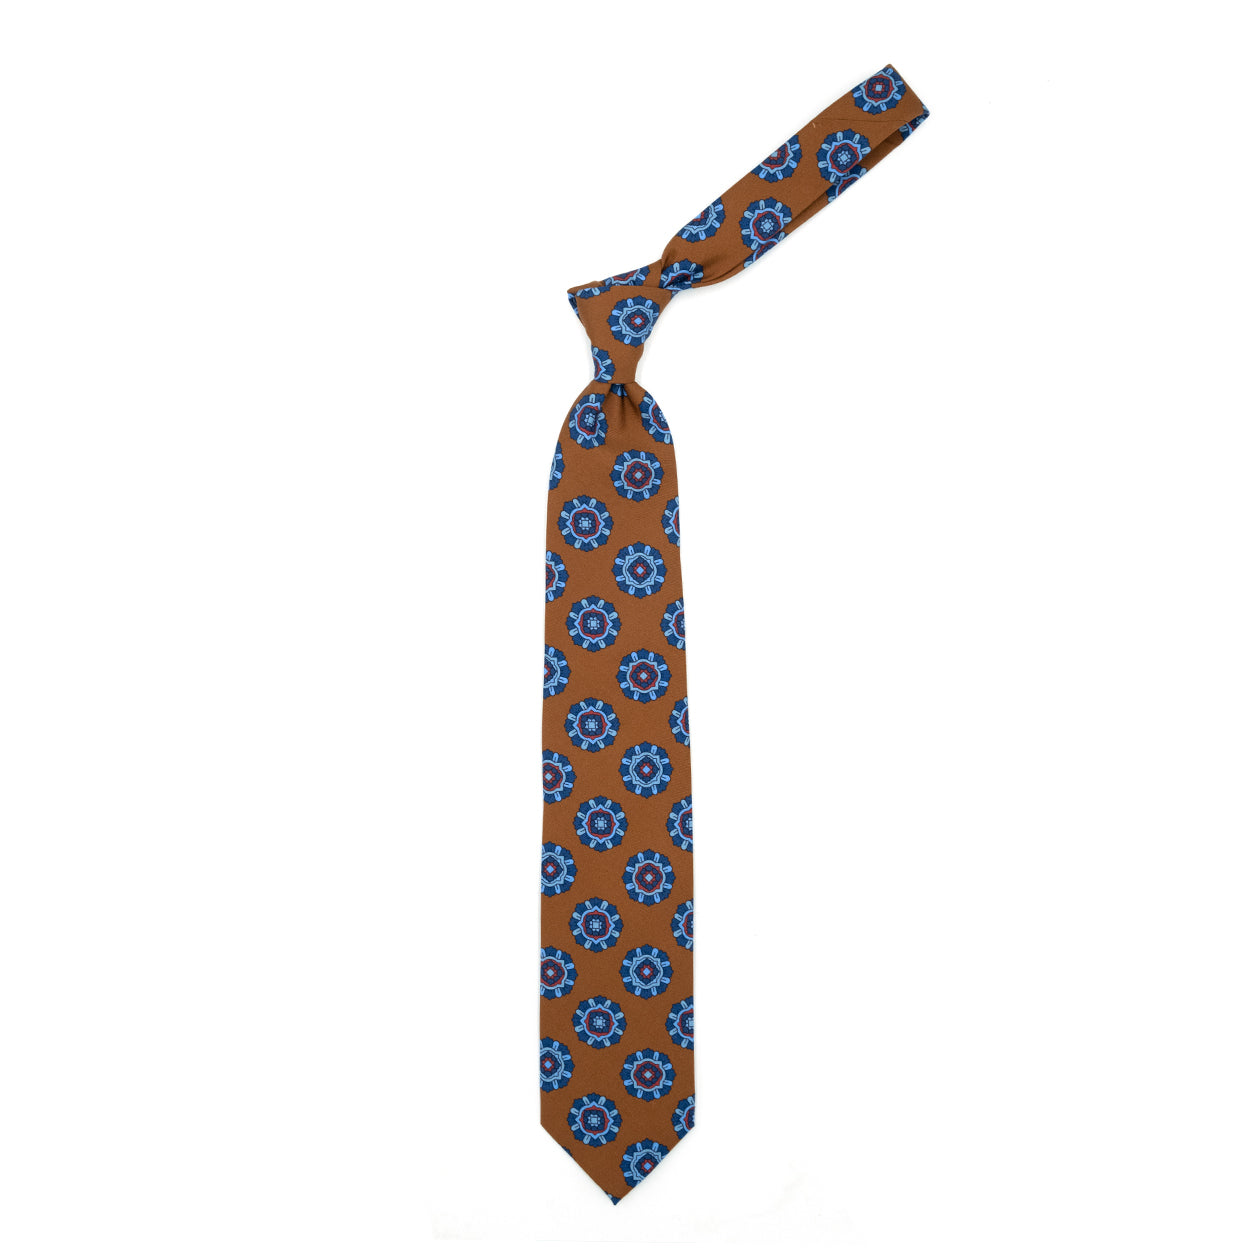 Cravatta marrone chiaro con medaglioni blu, azzurri e rossi